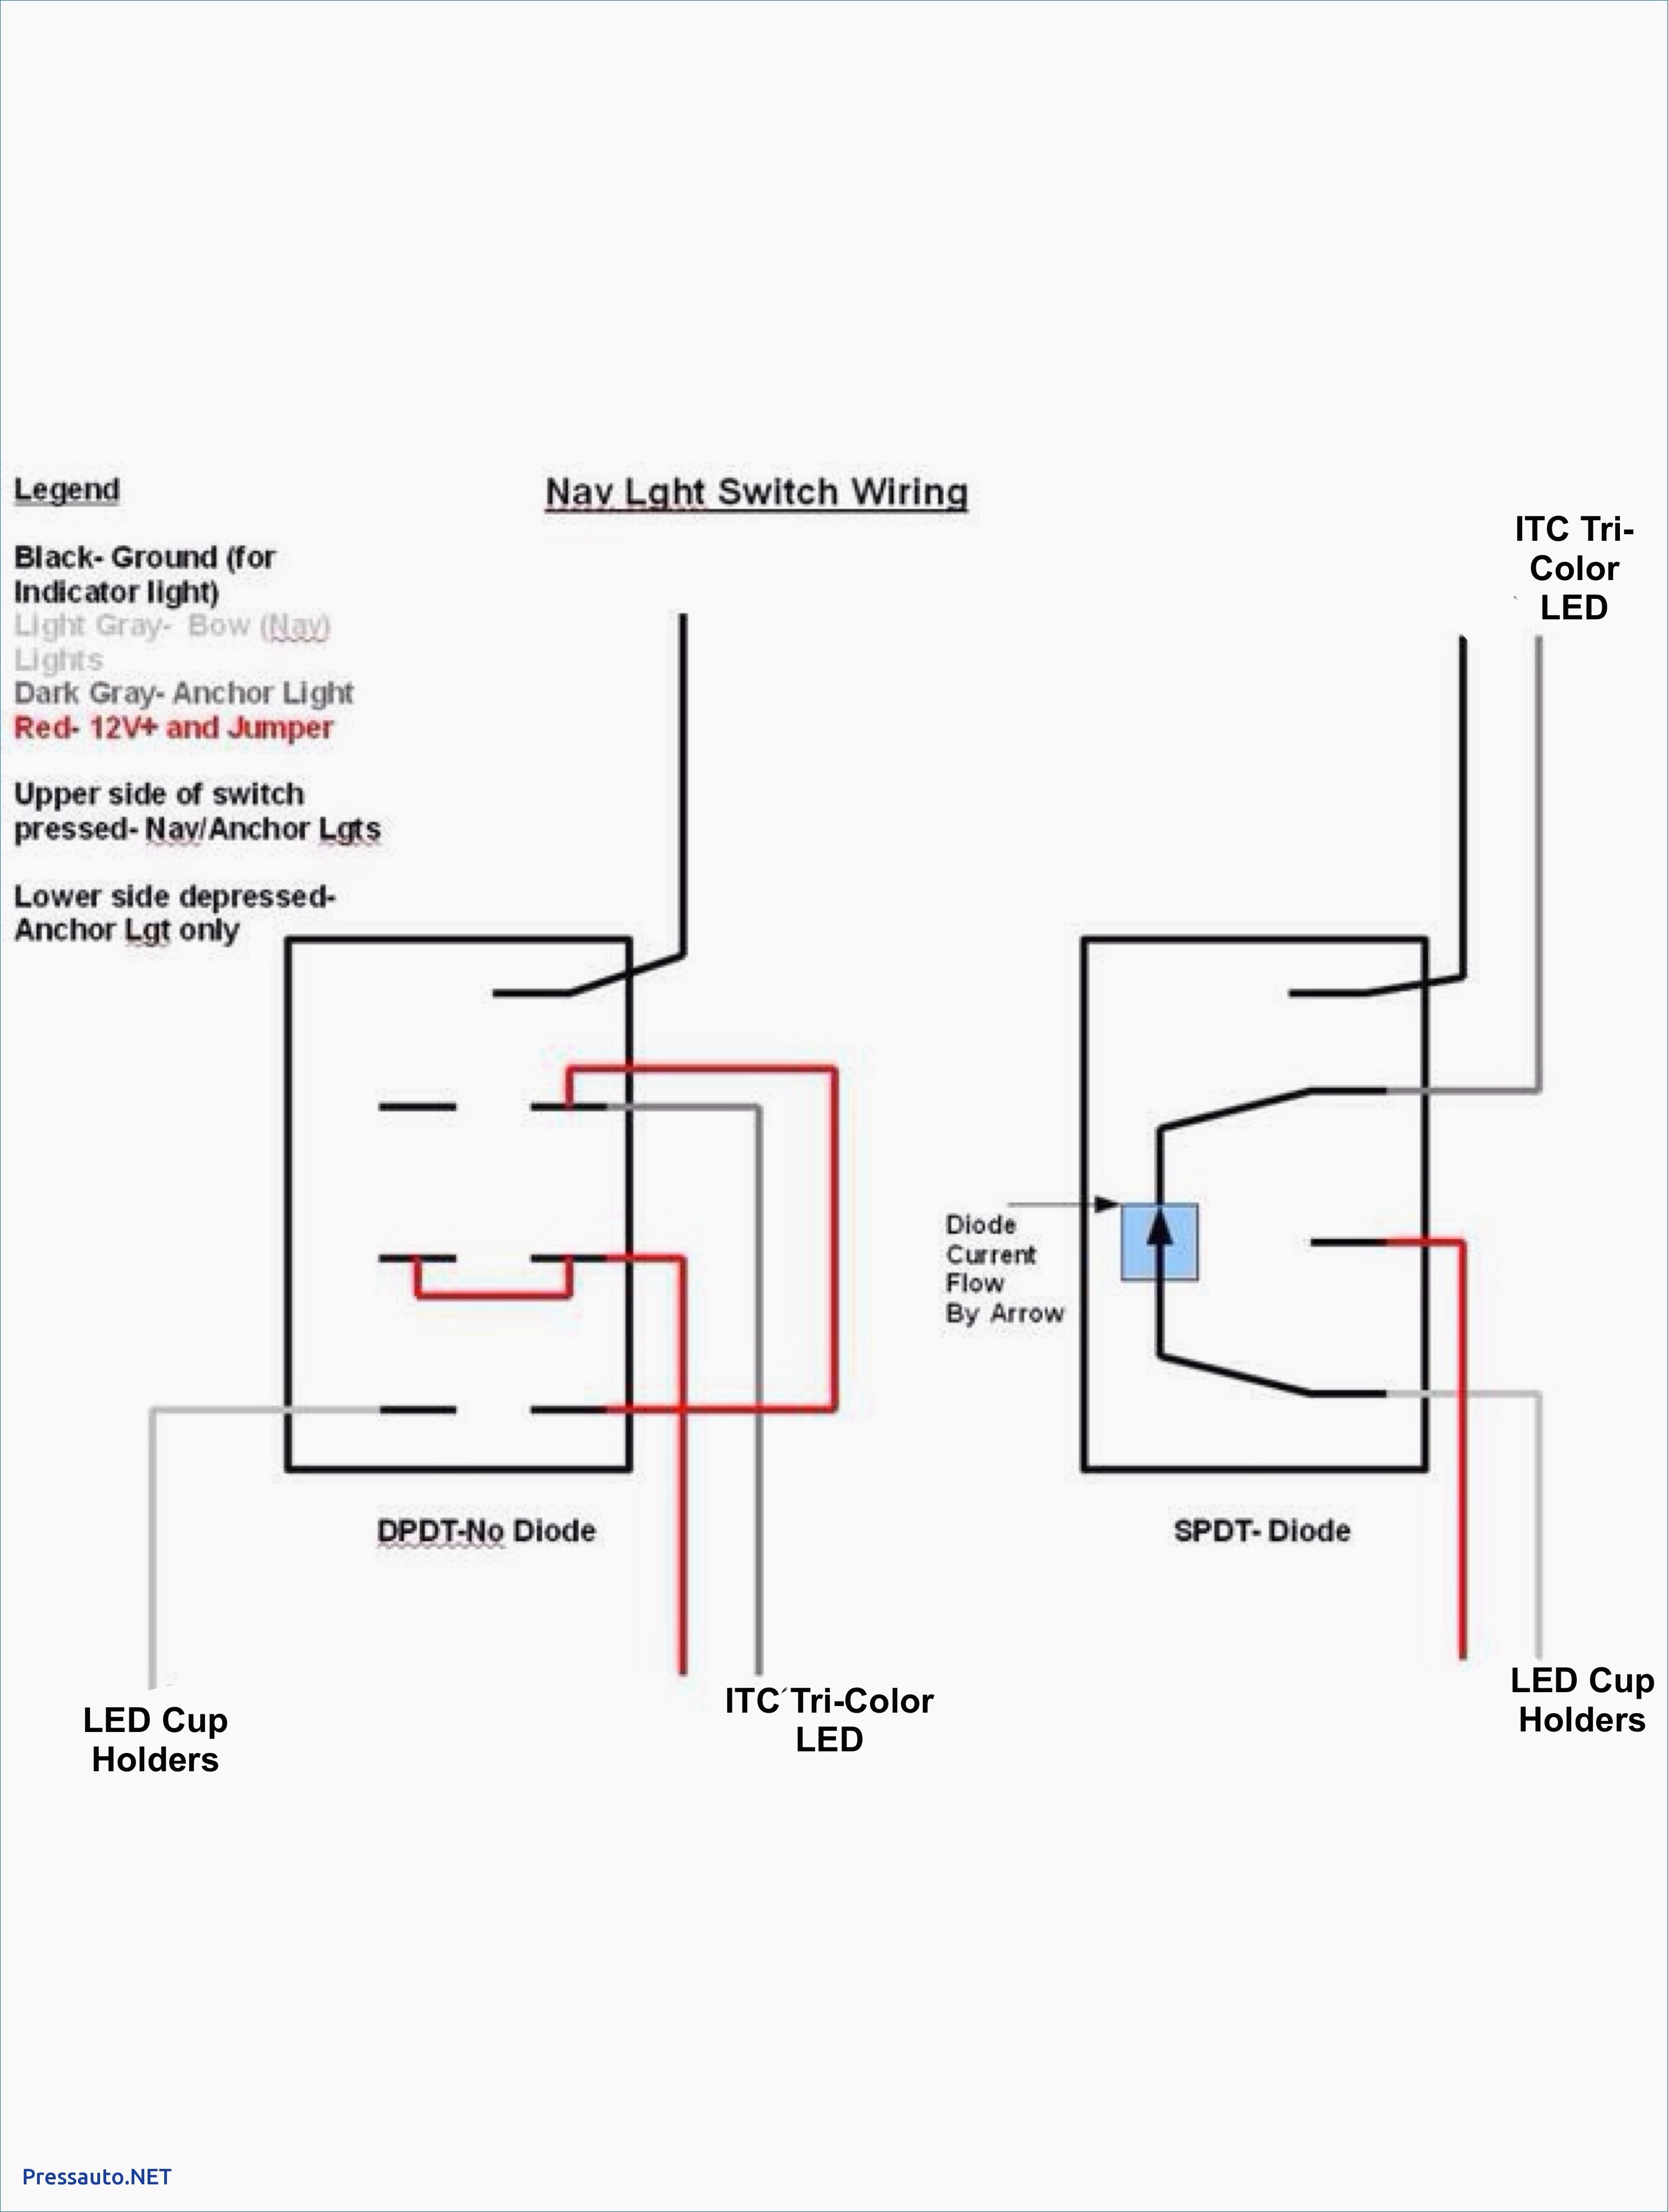 3 Pin Rocker Switch Wiring Diagram Simple Wiring Diagrams For Toggle Switches Data Wiring Diagrams •